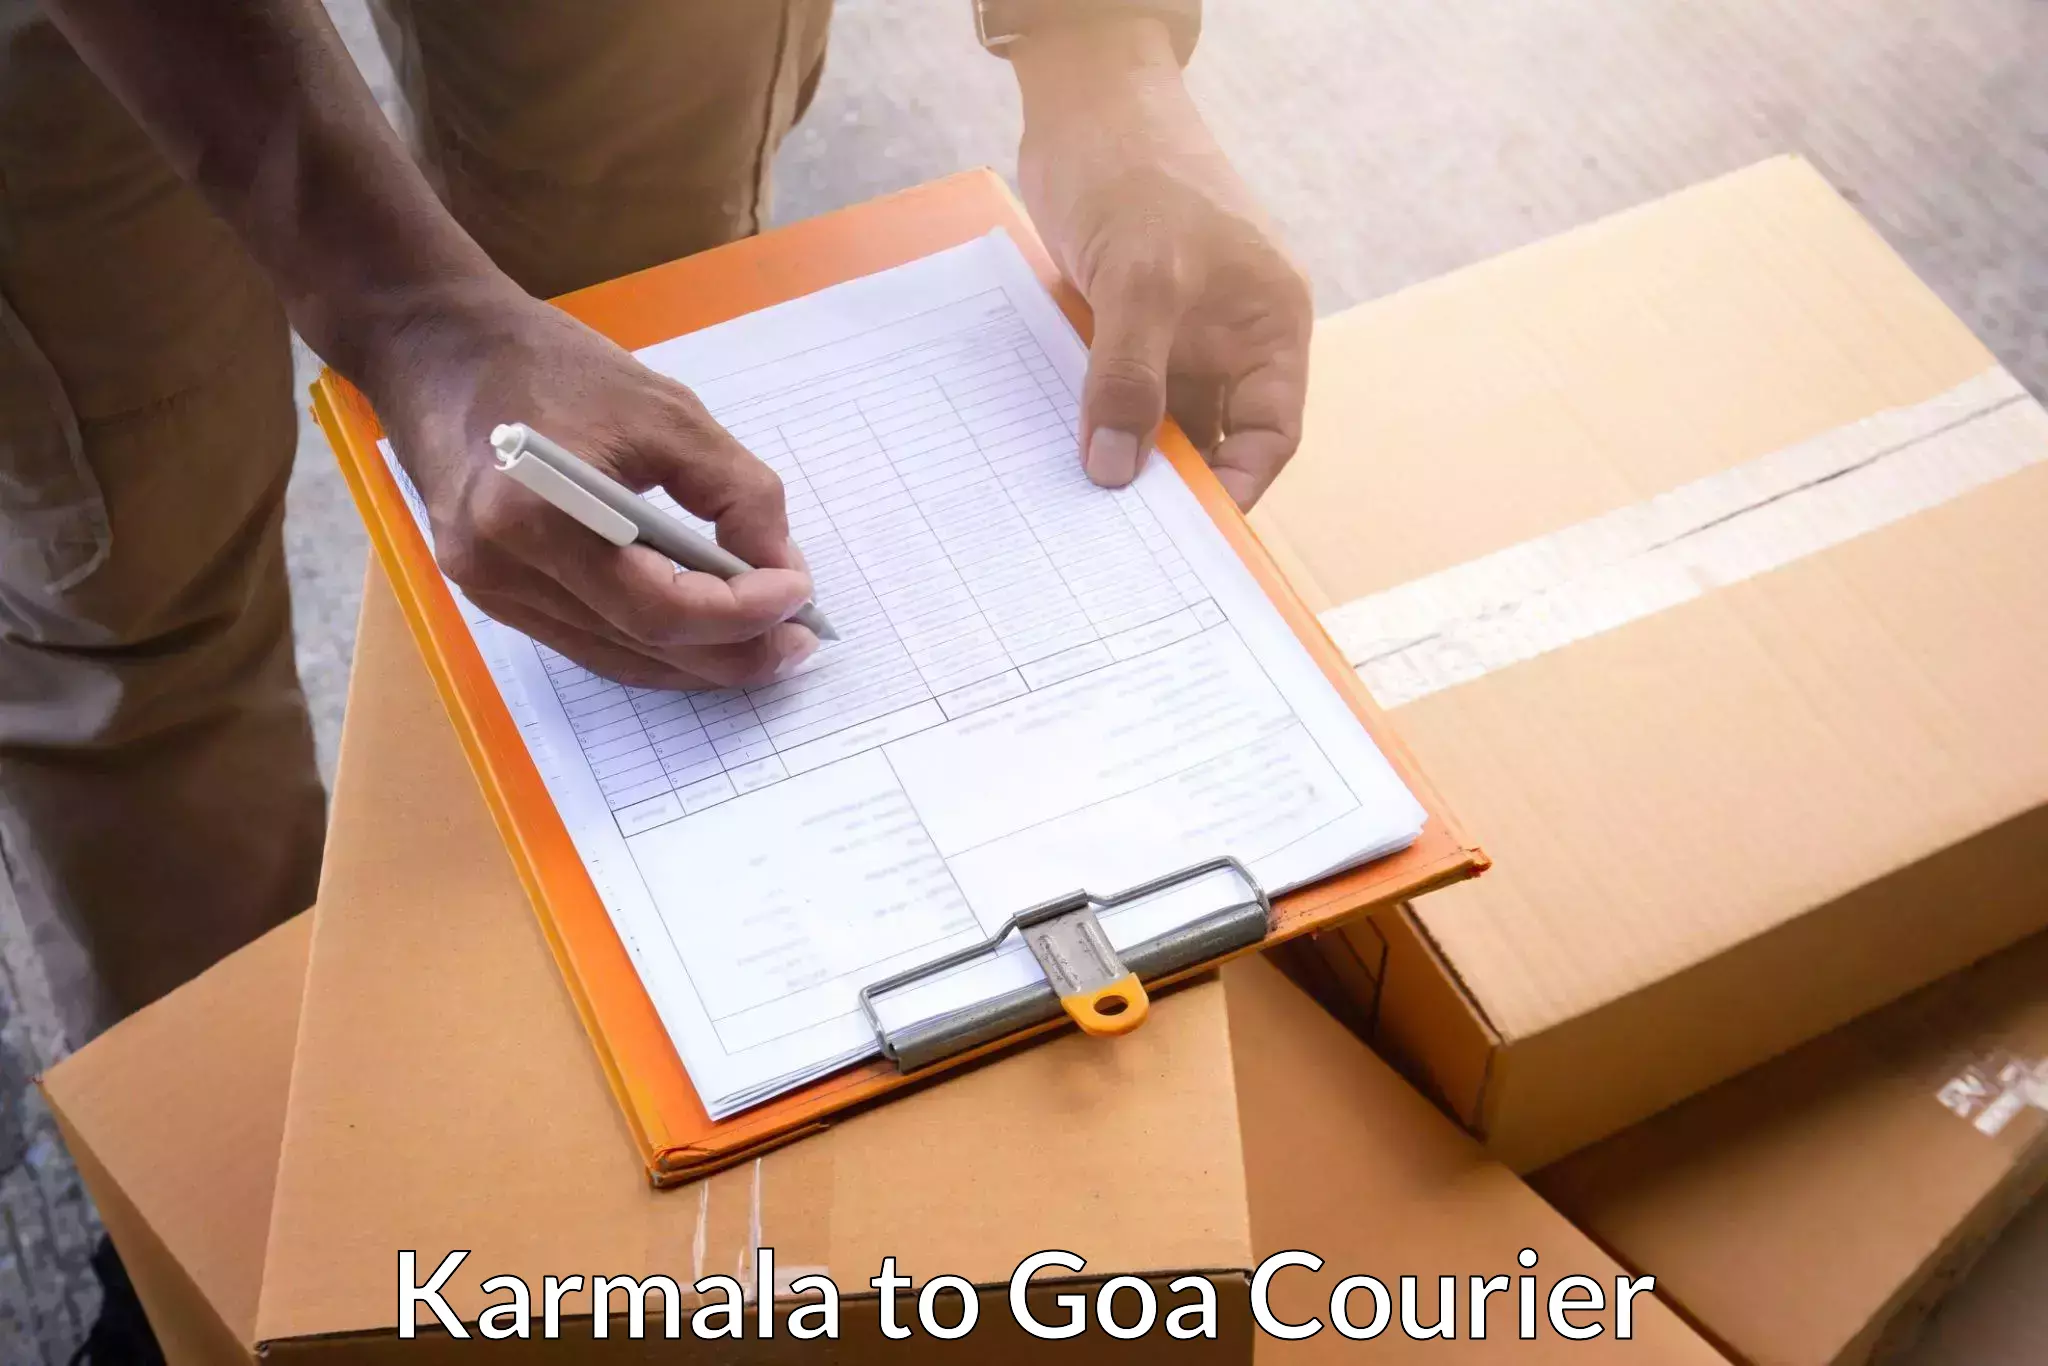 Global freight services Karmala to NIT Goa